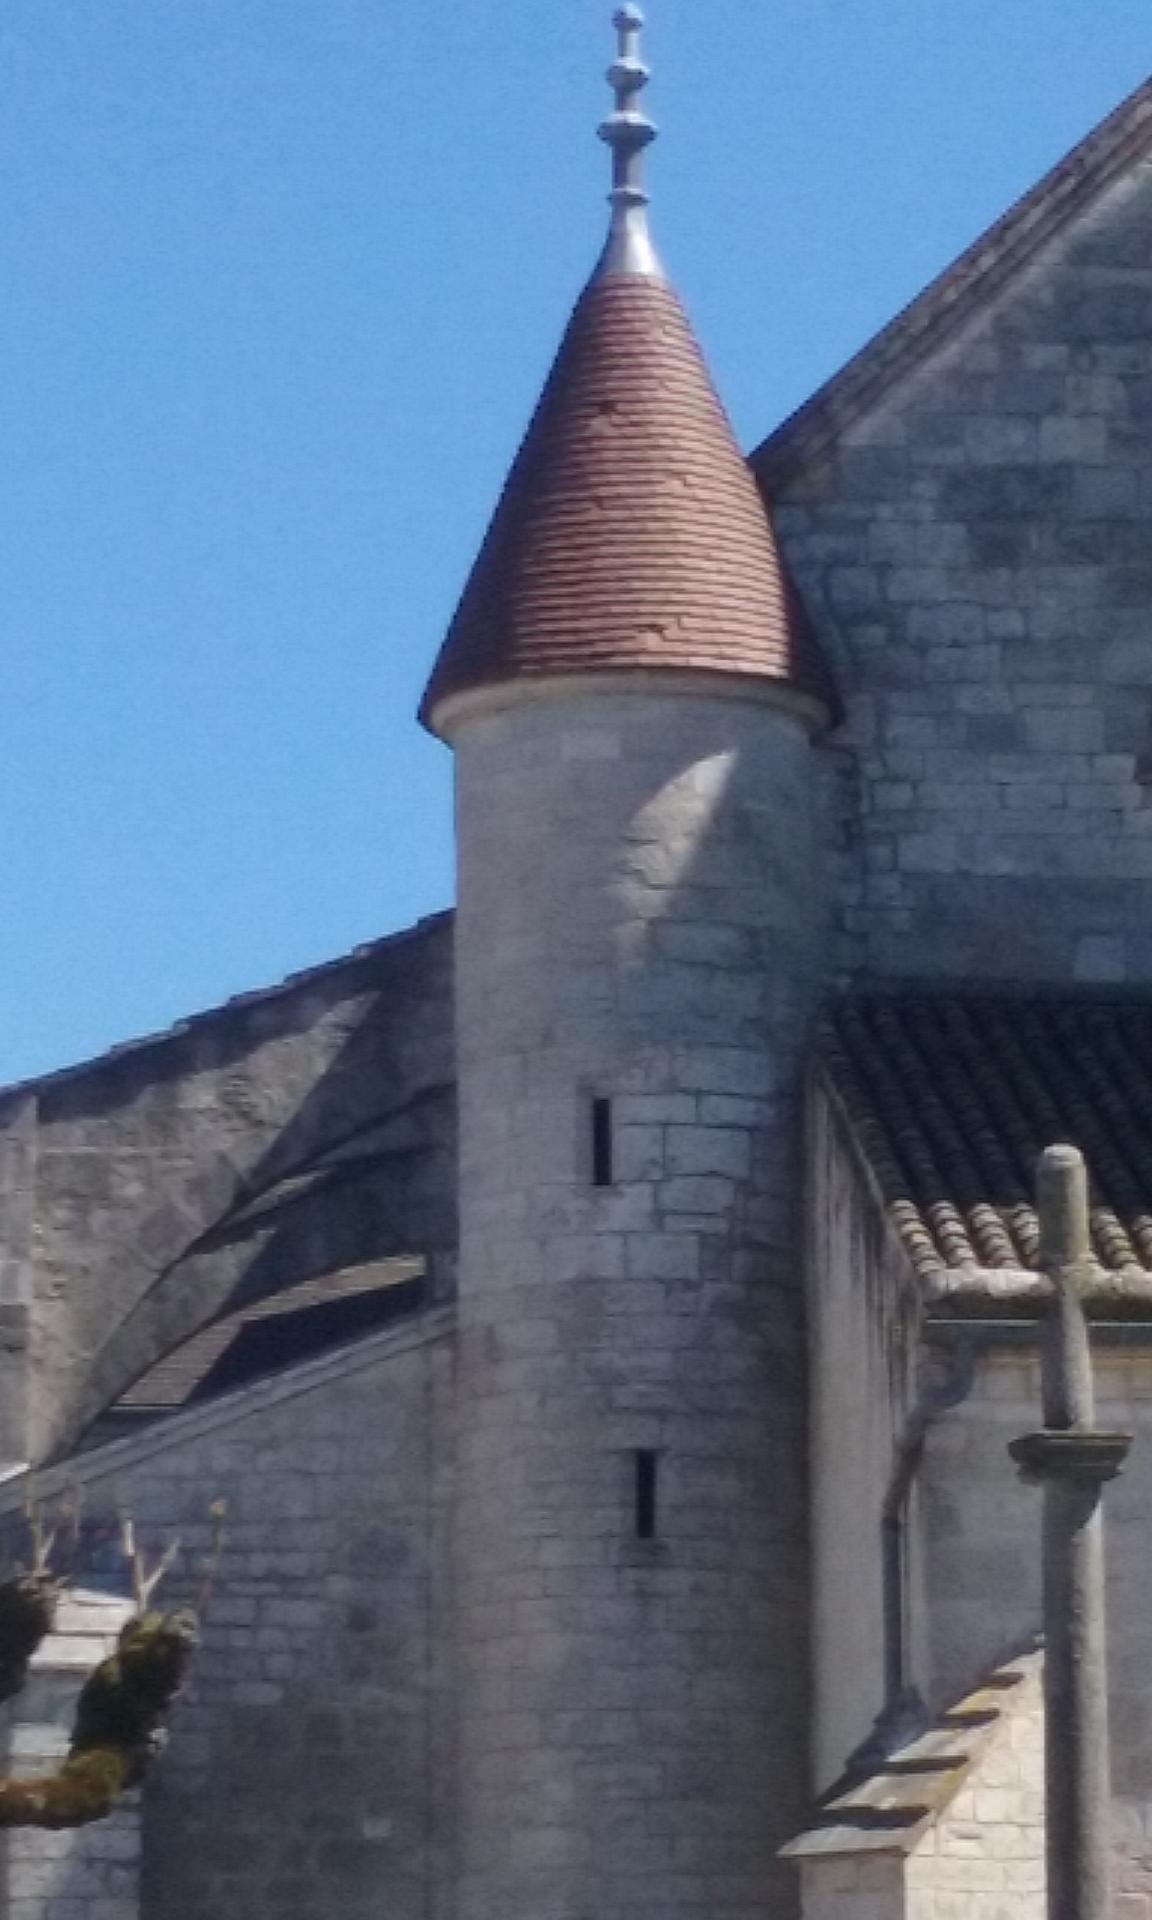 La tourelle permettant d'accéder au clocher.